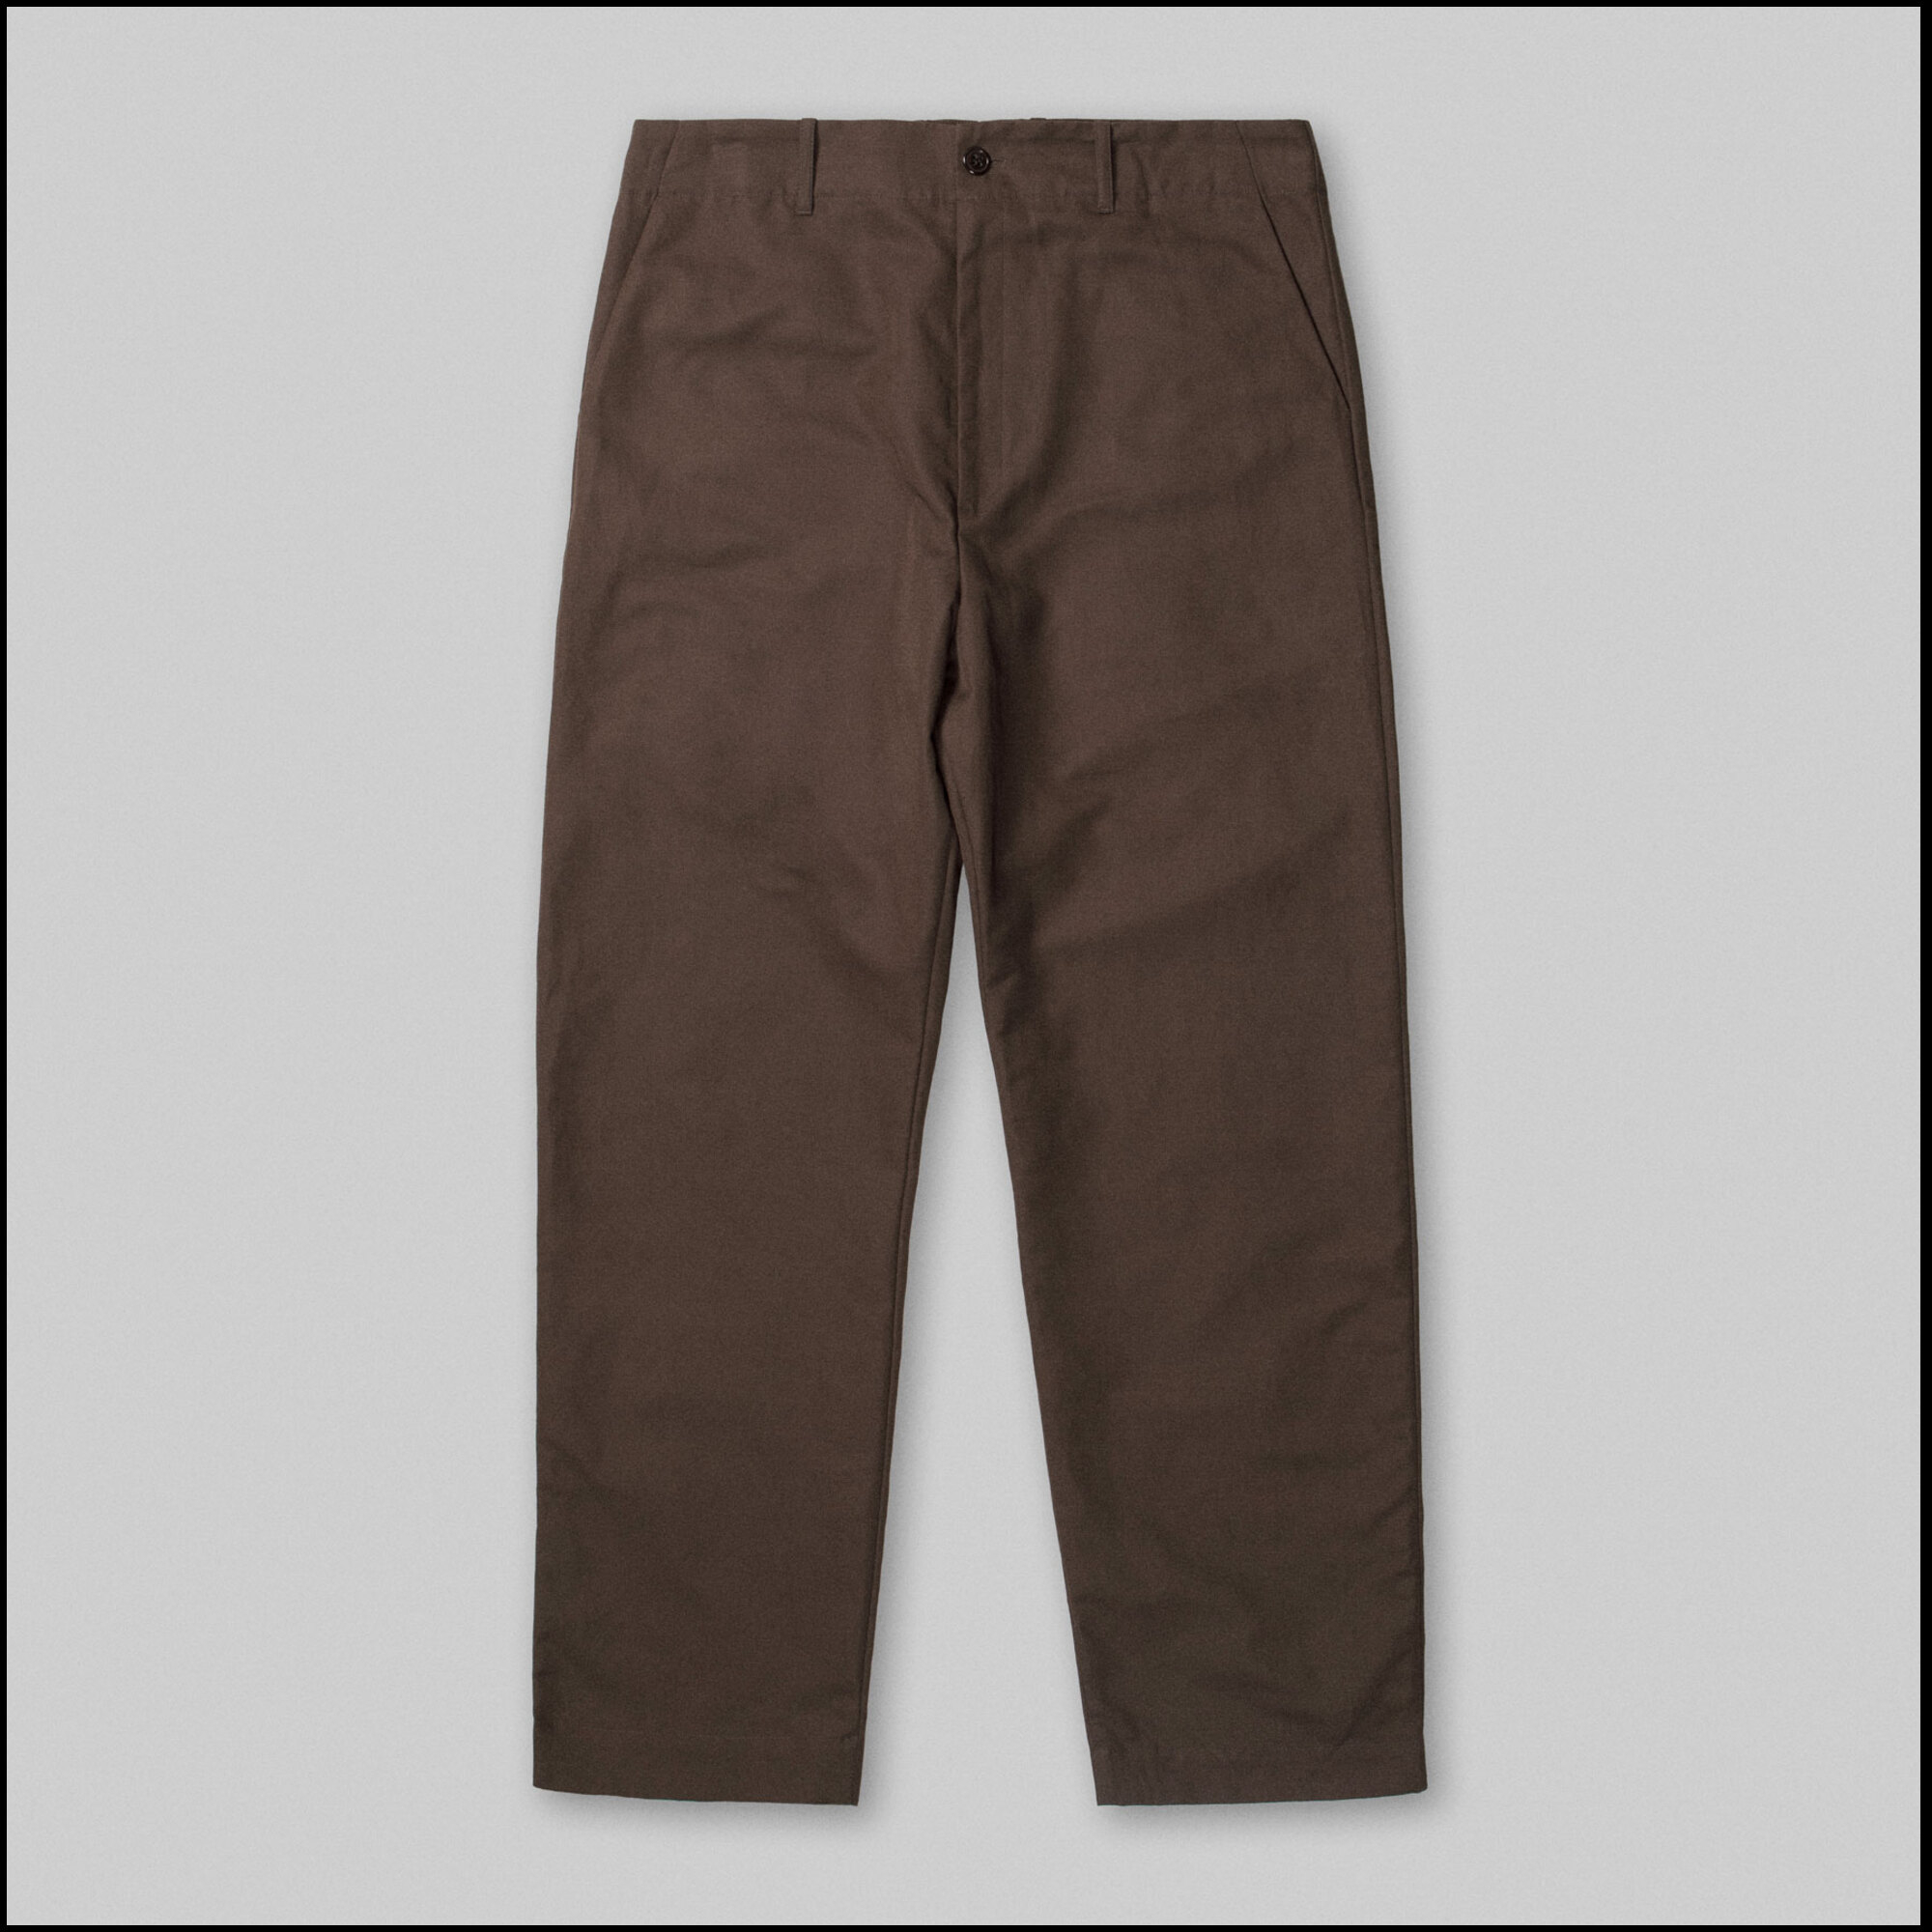 FOX Pants by Arpenteur in Brown color